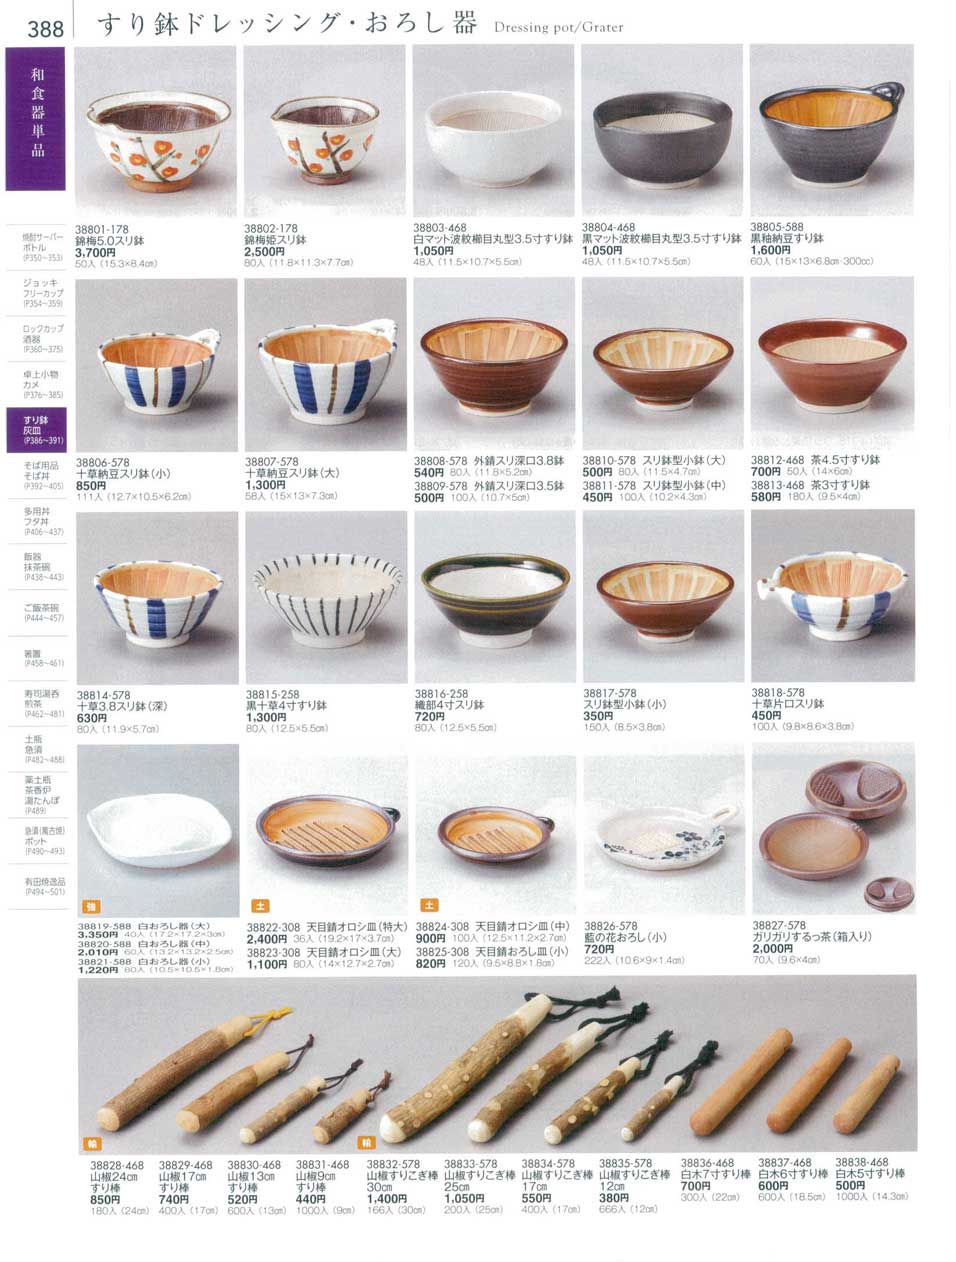 食器 すり鉢ドレッシング・おろし器Dressing pot/Grater 陶雅１８－388ページ